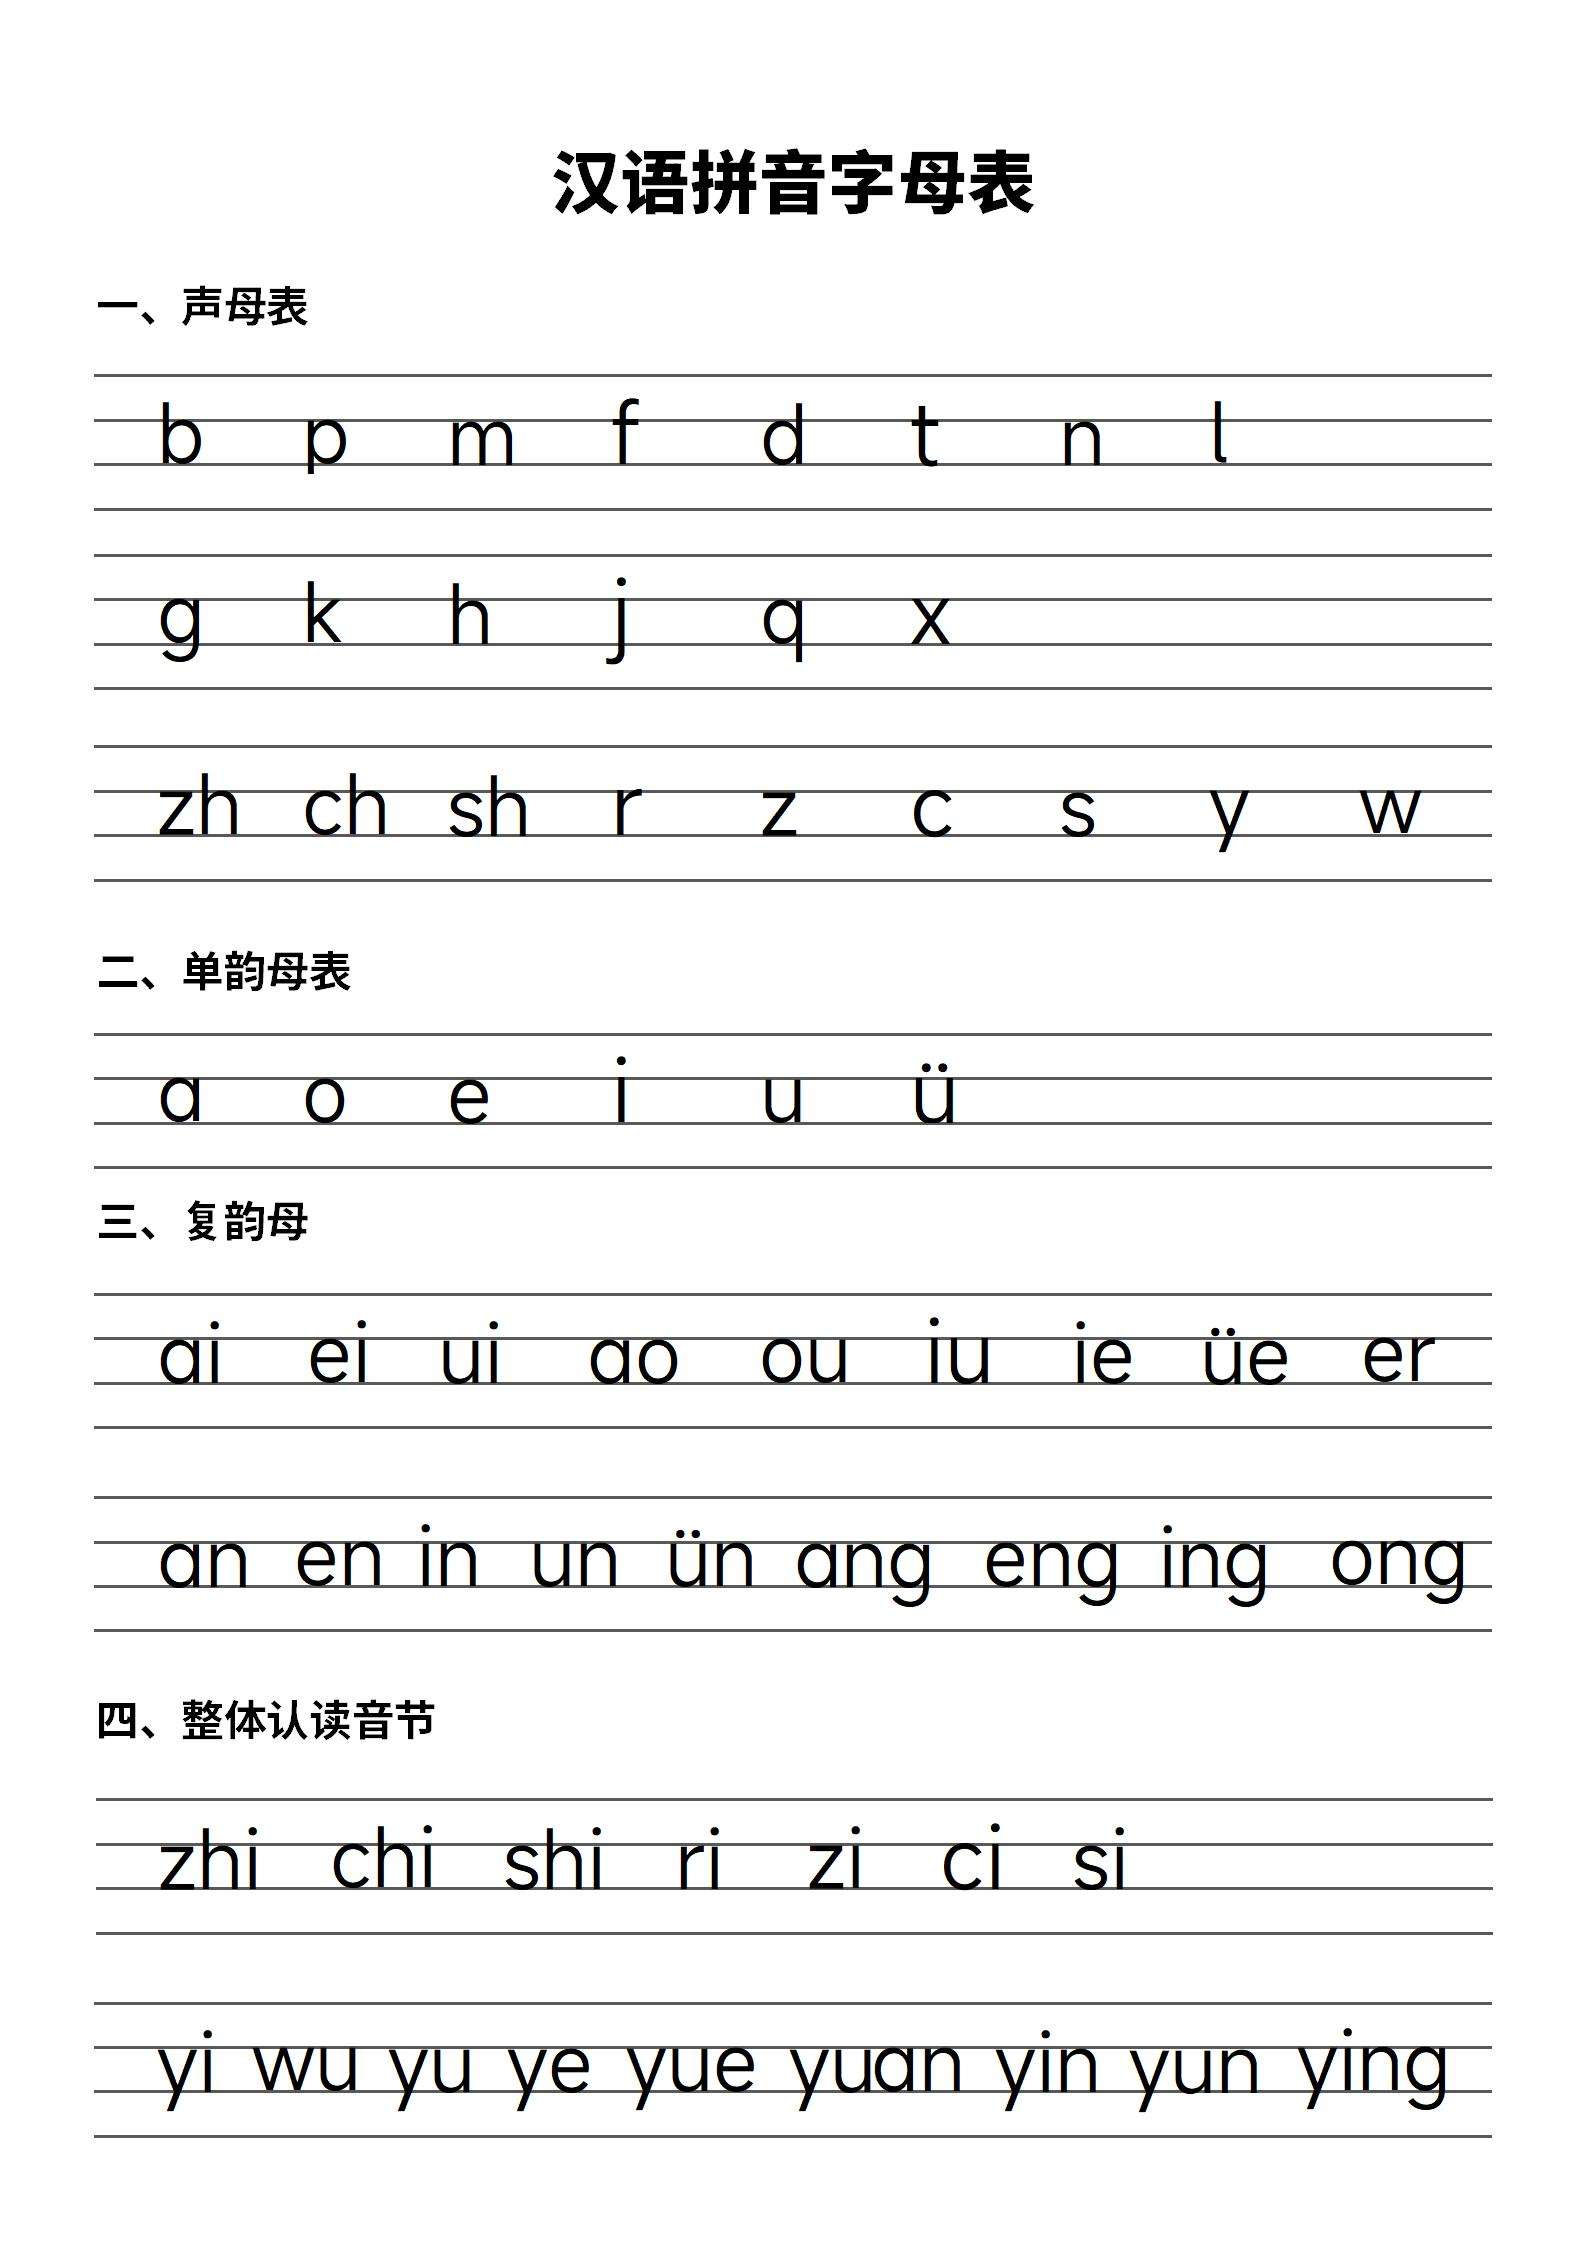 汉语拼音字母表word模板